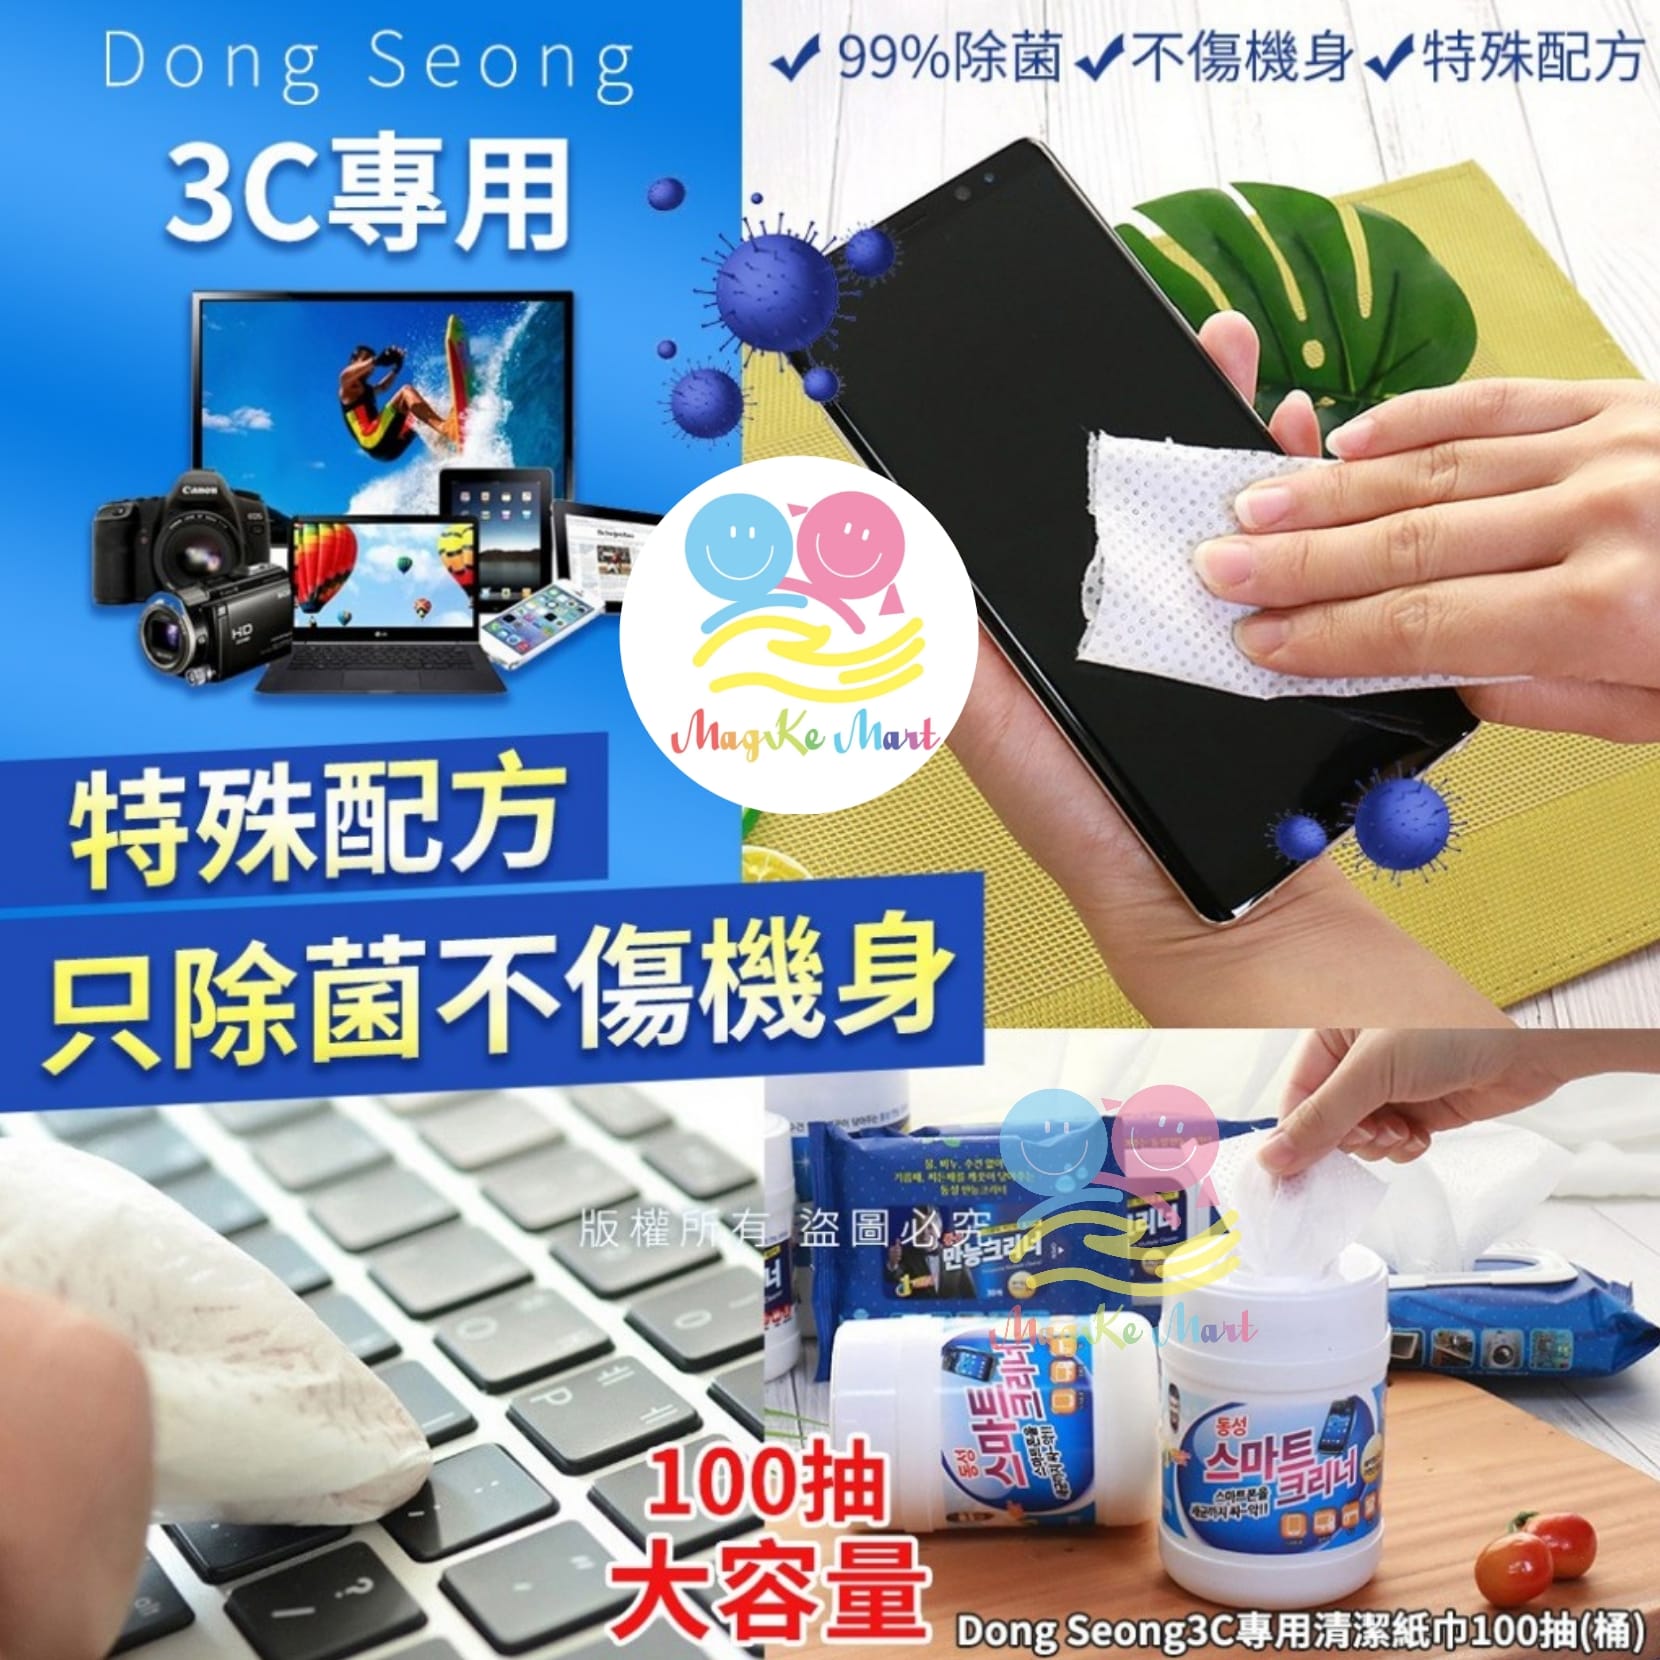 韓國 Dong Seong 3C 專用清潔紙巾(1桶100抽)